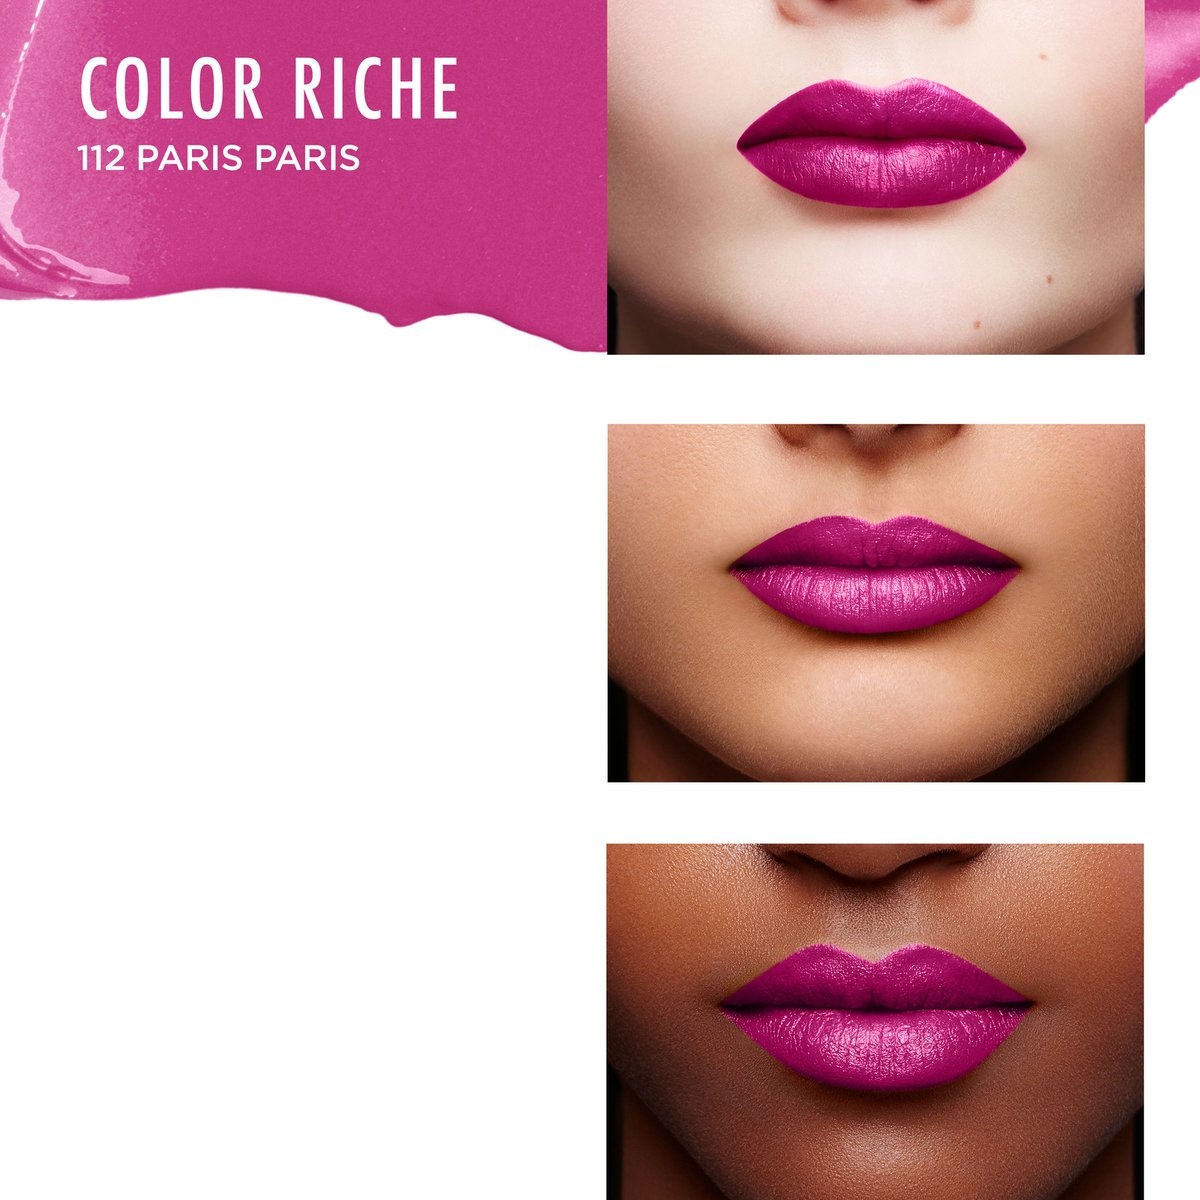 L'Oréal Paris Lippenstift Color Riche Satin – 112 Paris Paris Pink